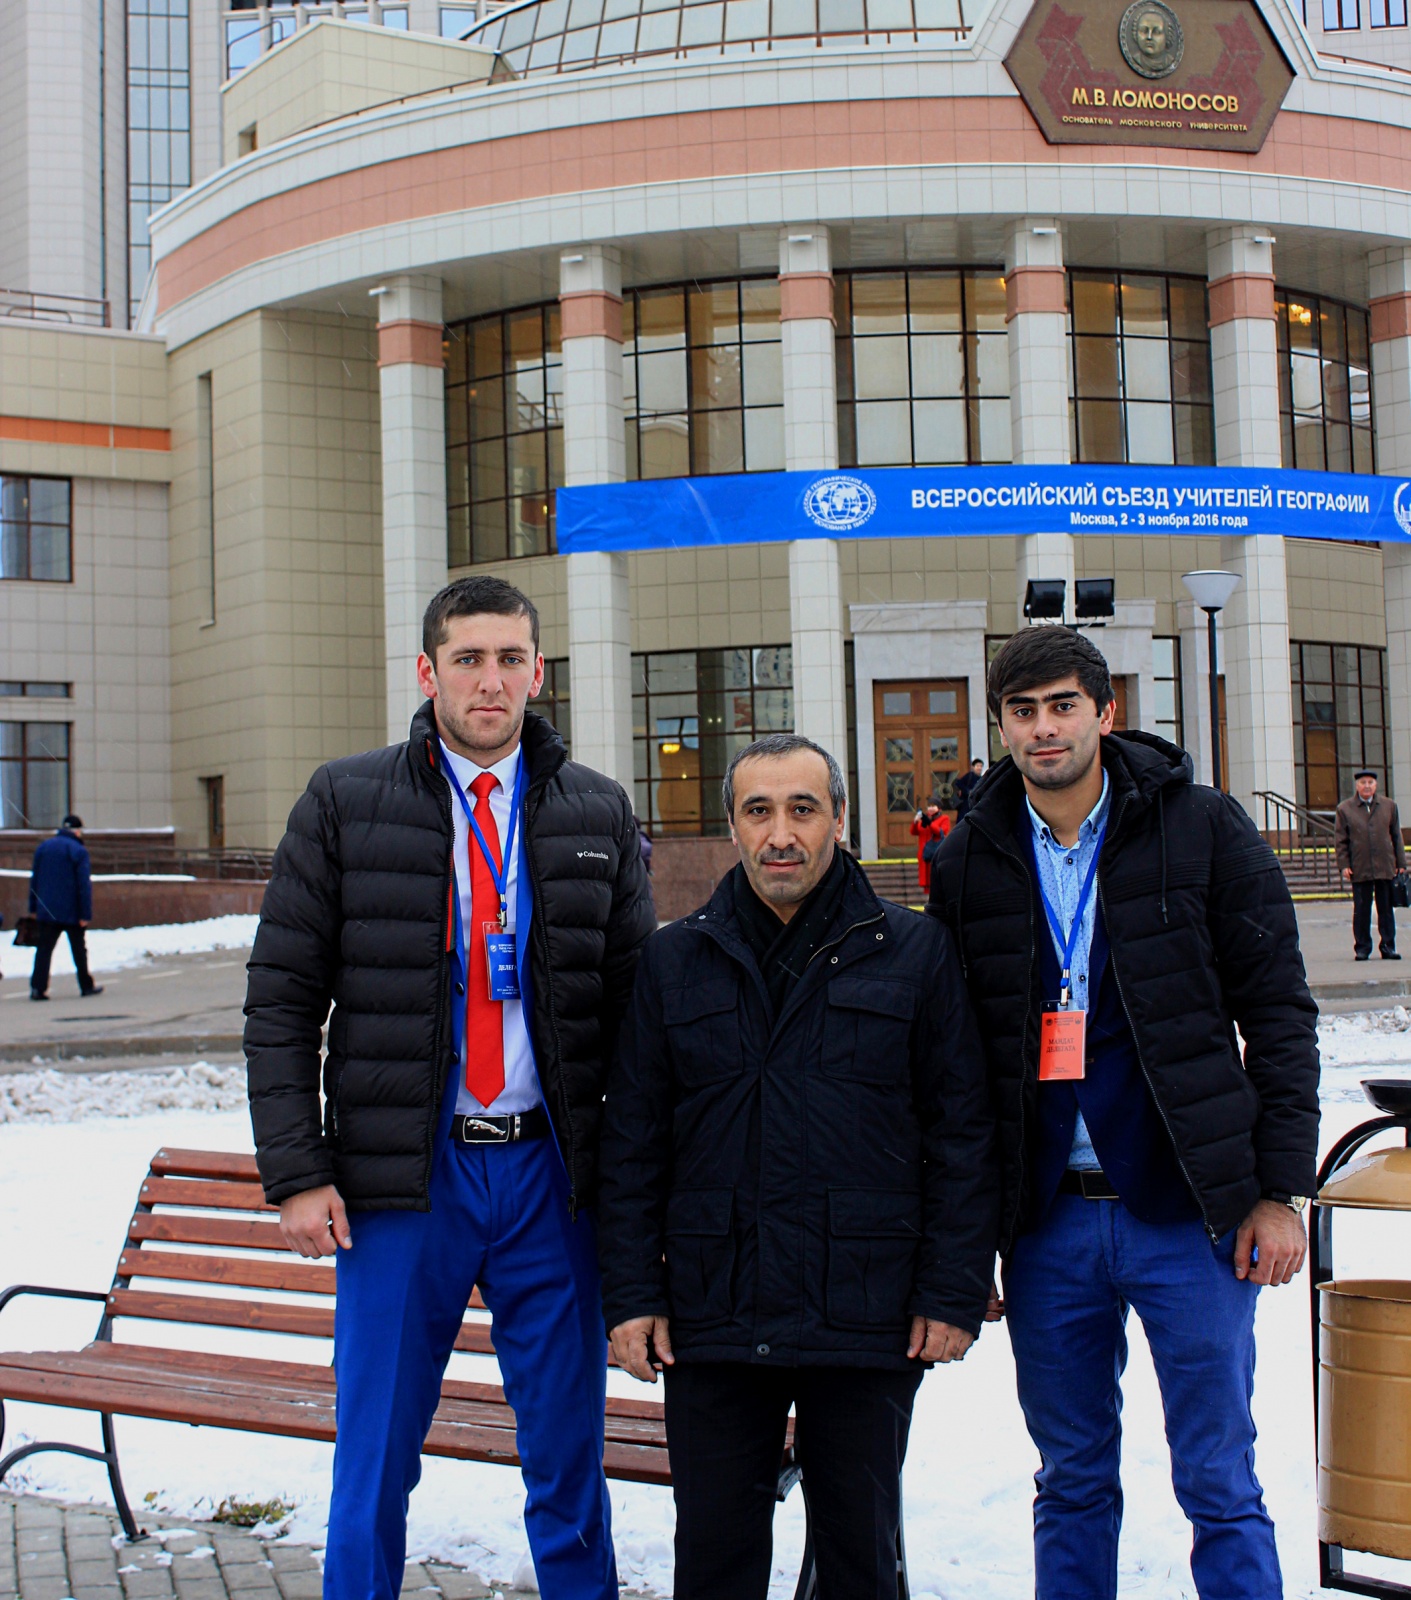 Дагестанская делегация. Фото предоставлено Дагестанским республиканским отделением РГО